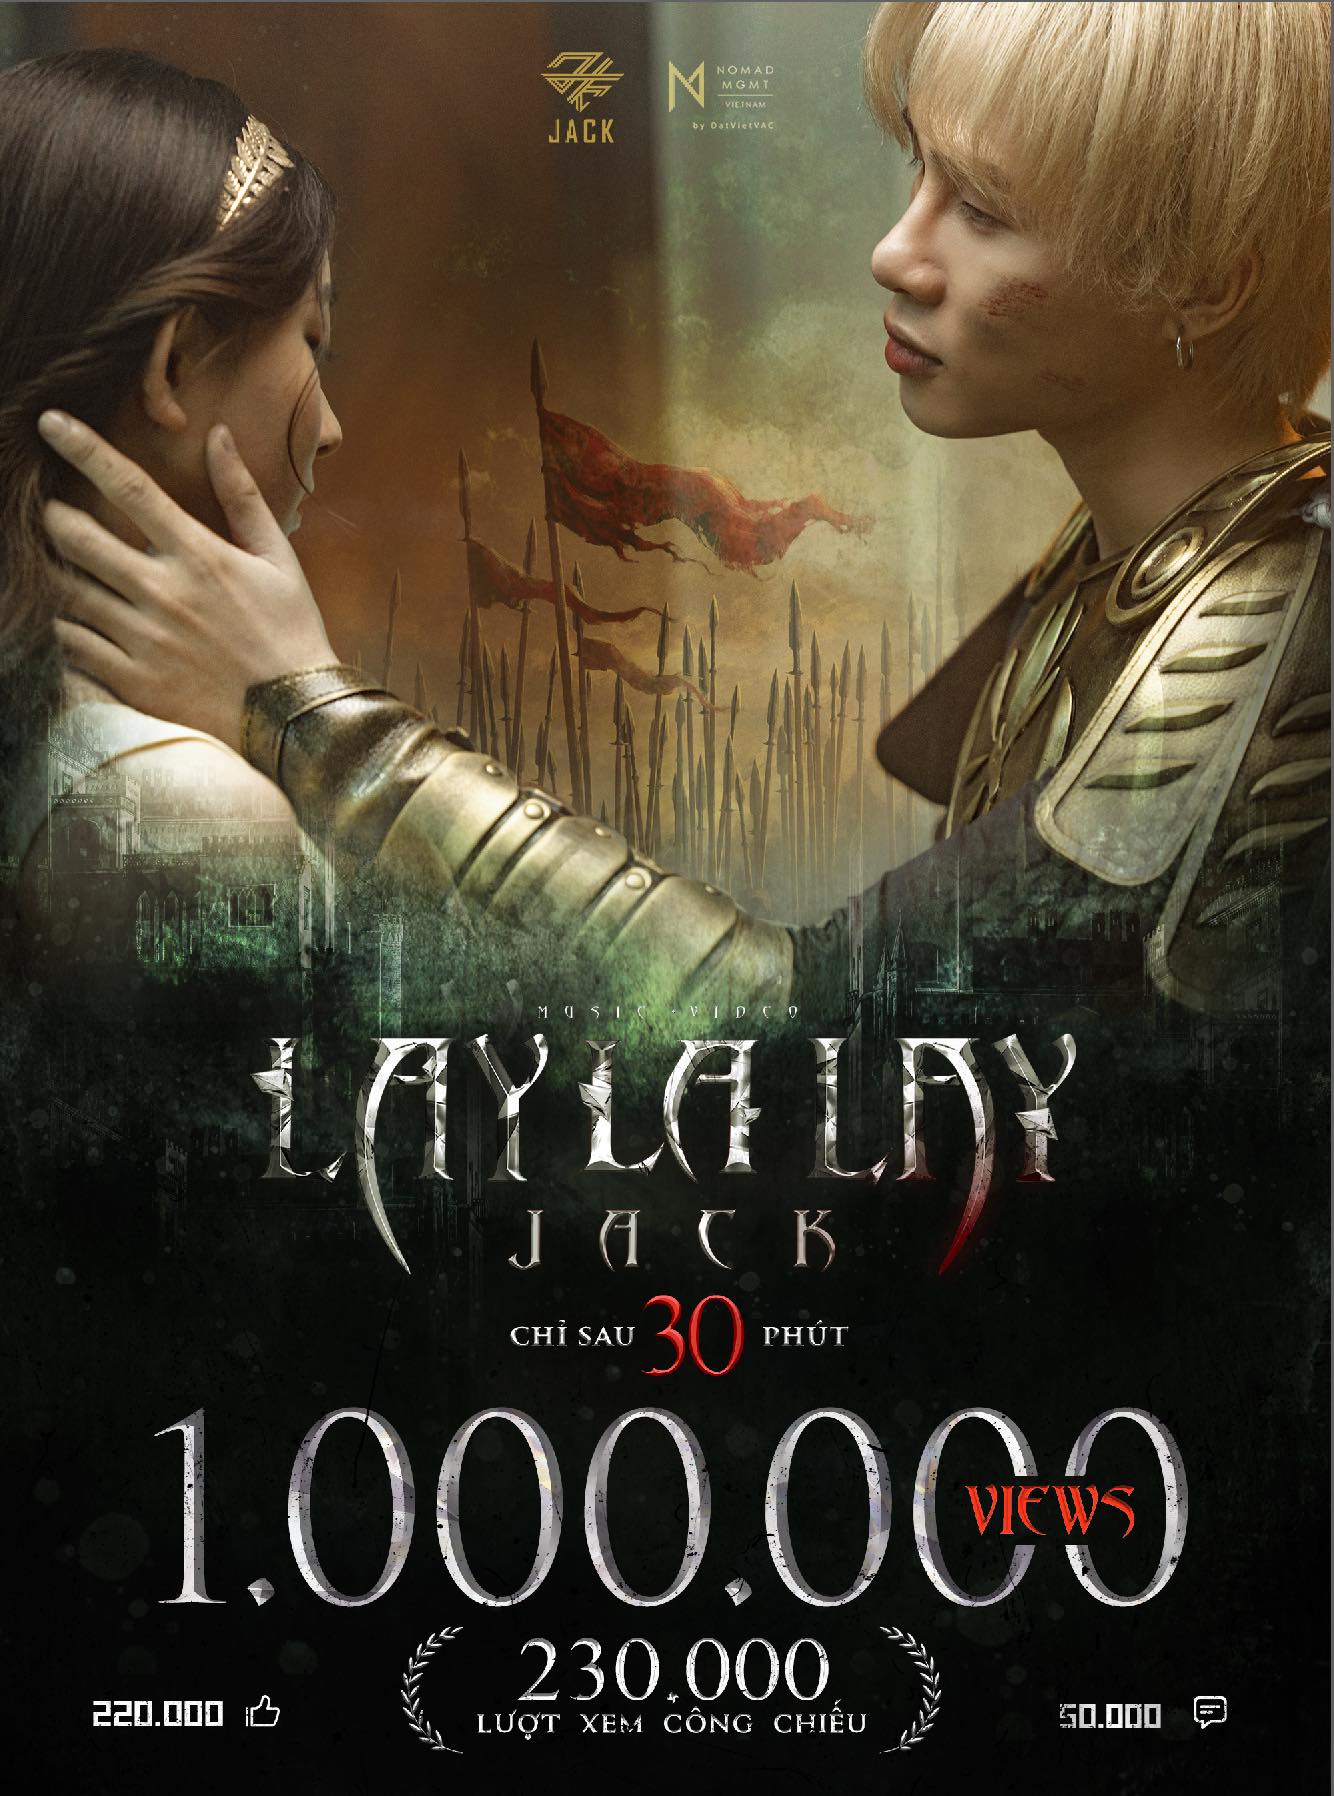 Thành tích sau 30 phút công chiếu MV 'Laylalay' của Jack vừa qua